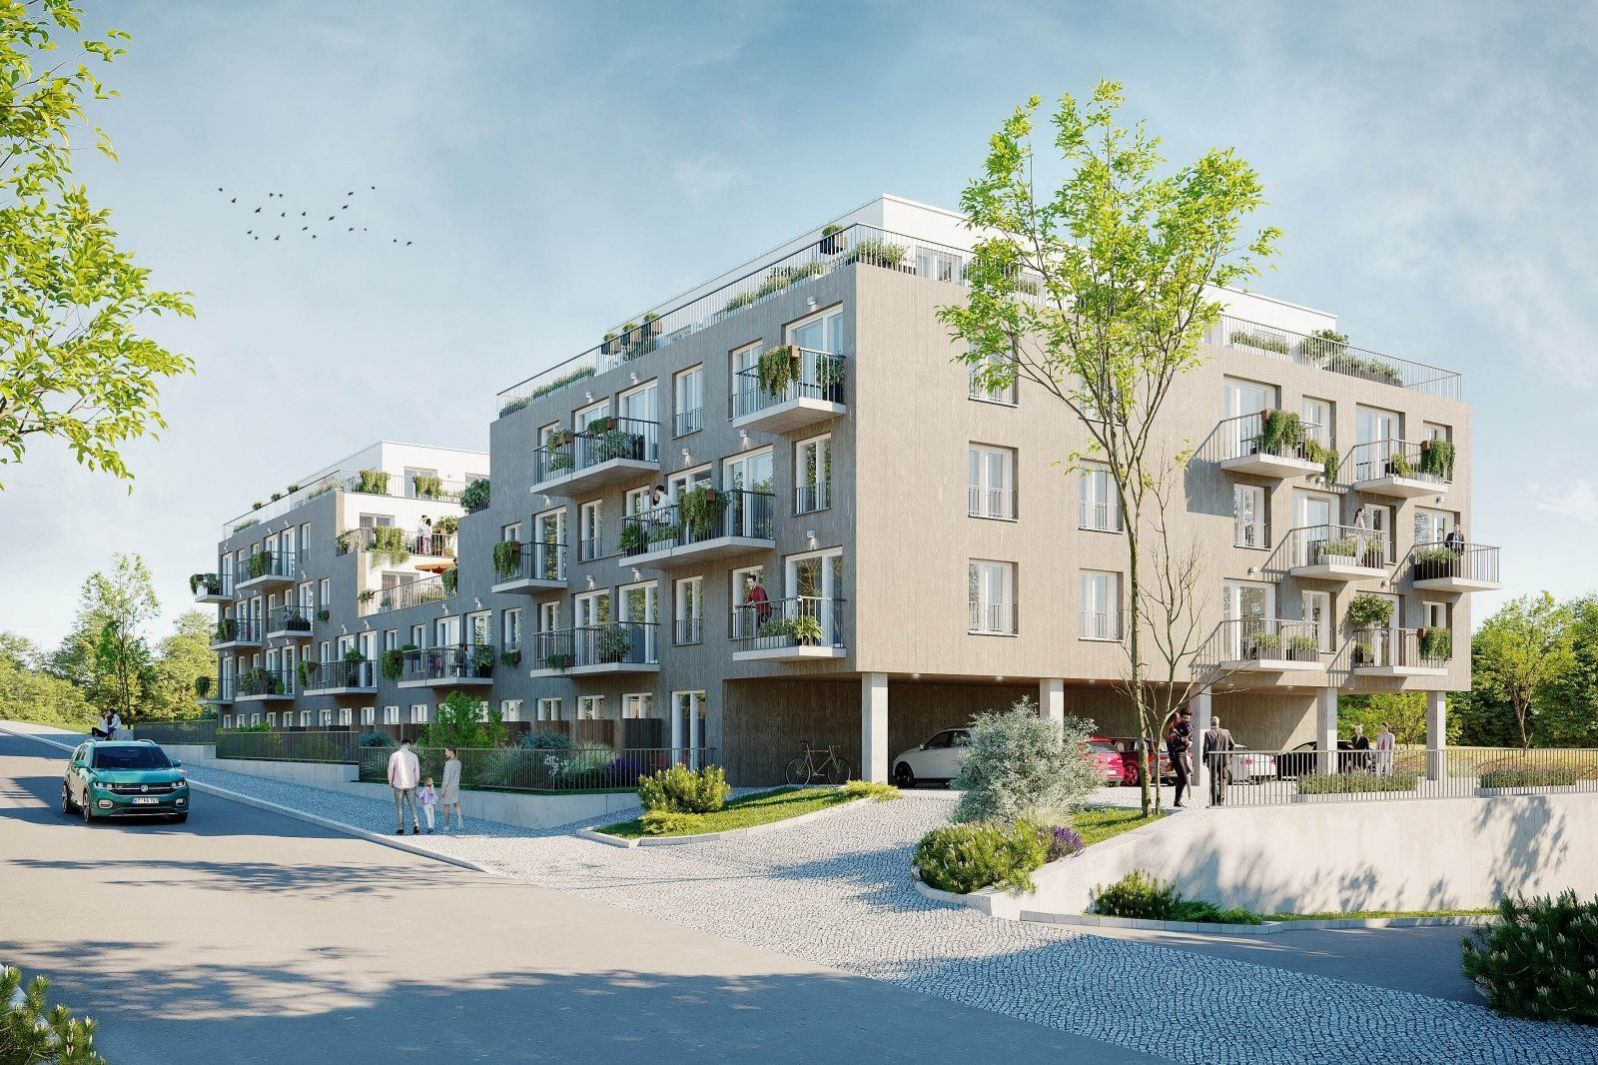 Moderní rodinný byt 3+kk s balkonem na Praze 9 v projektu Zelené kaskády. Akční sleva 339 920 Kč., obrázek č. 2